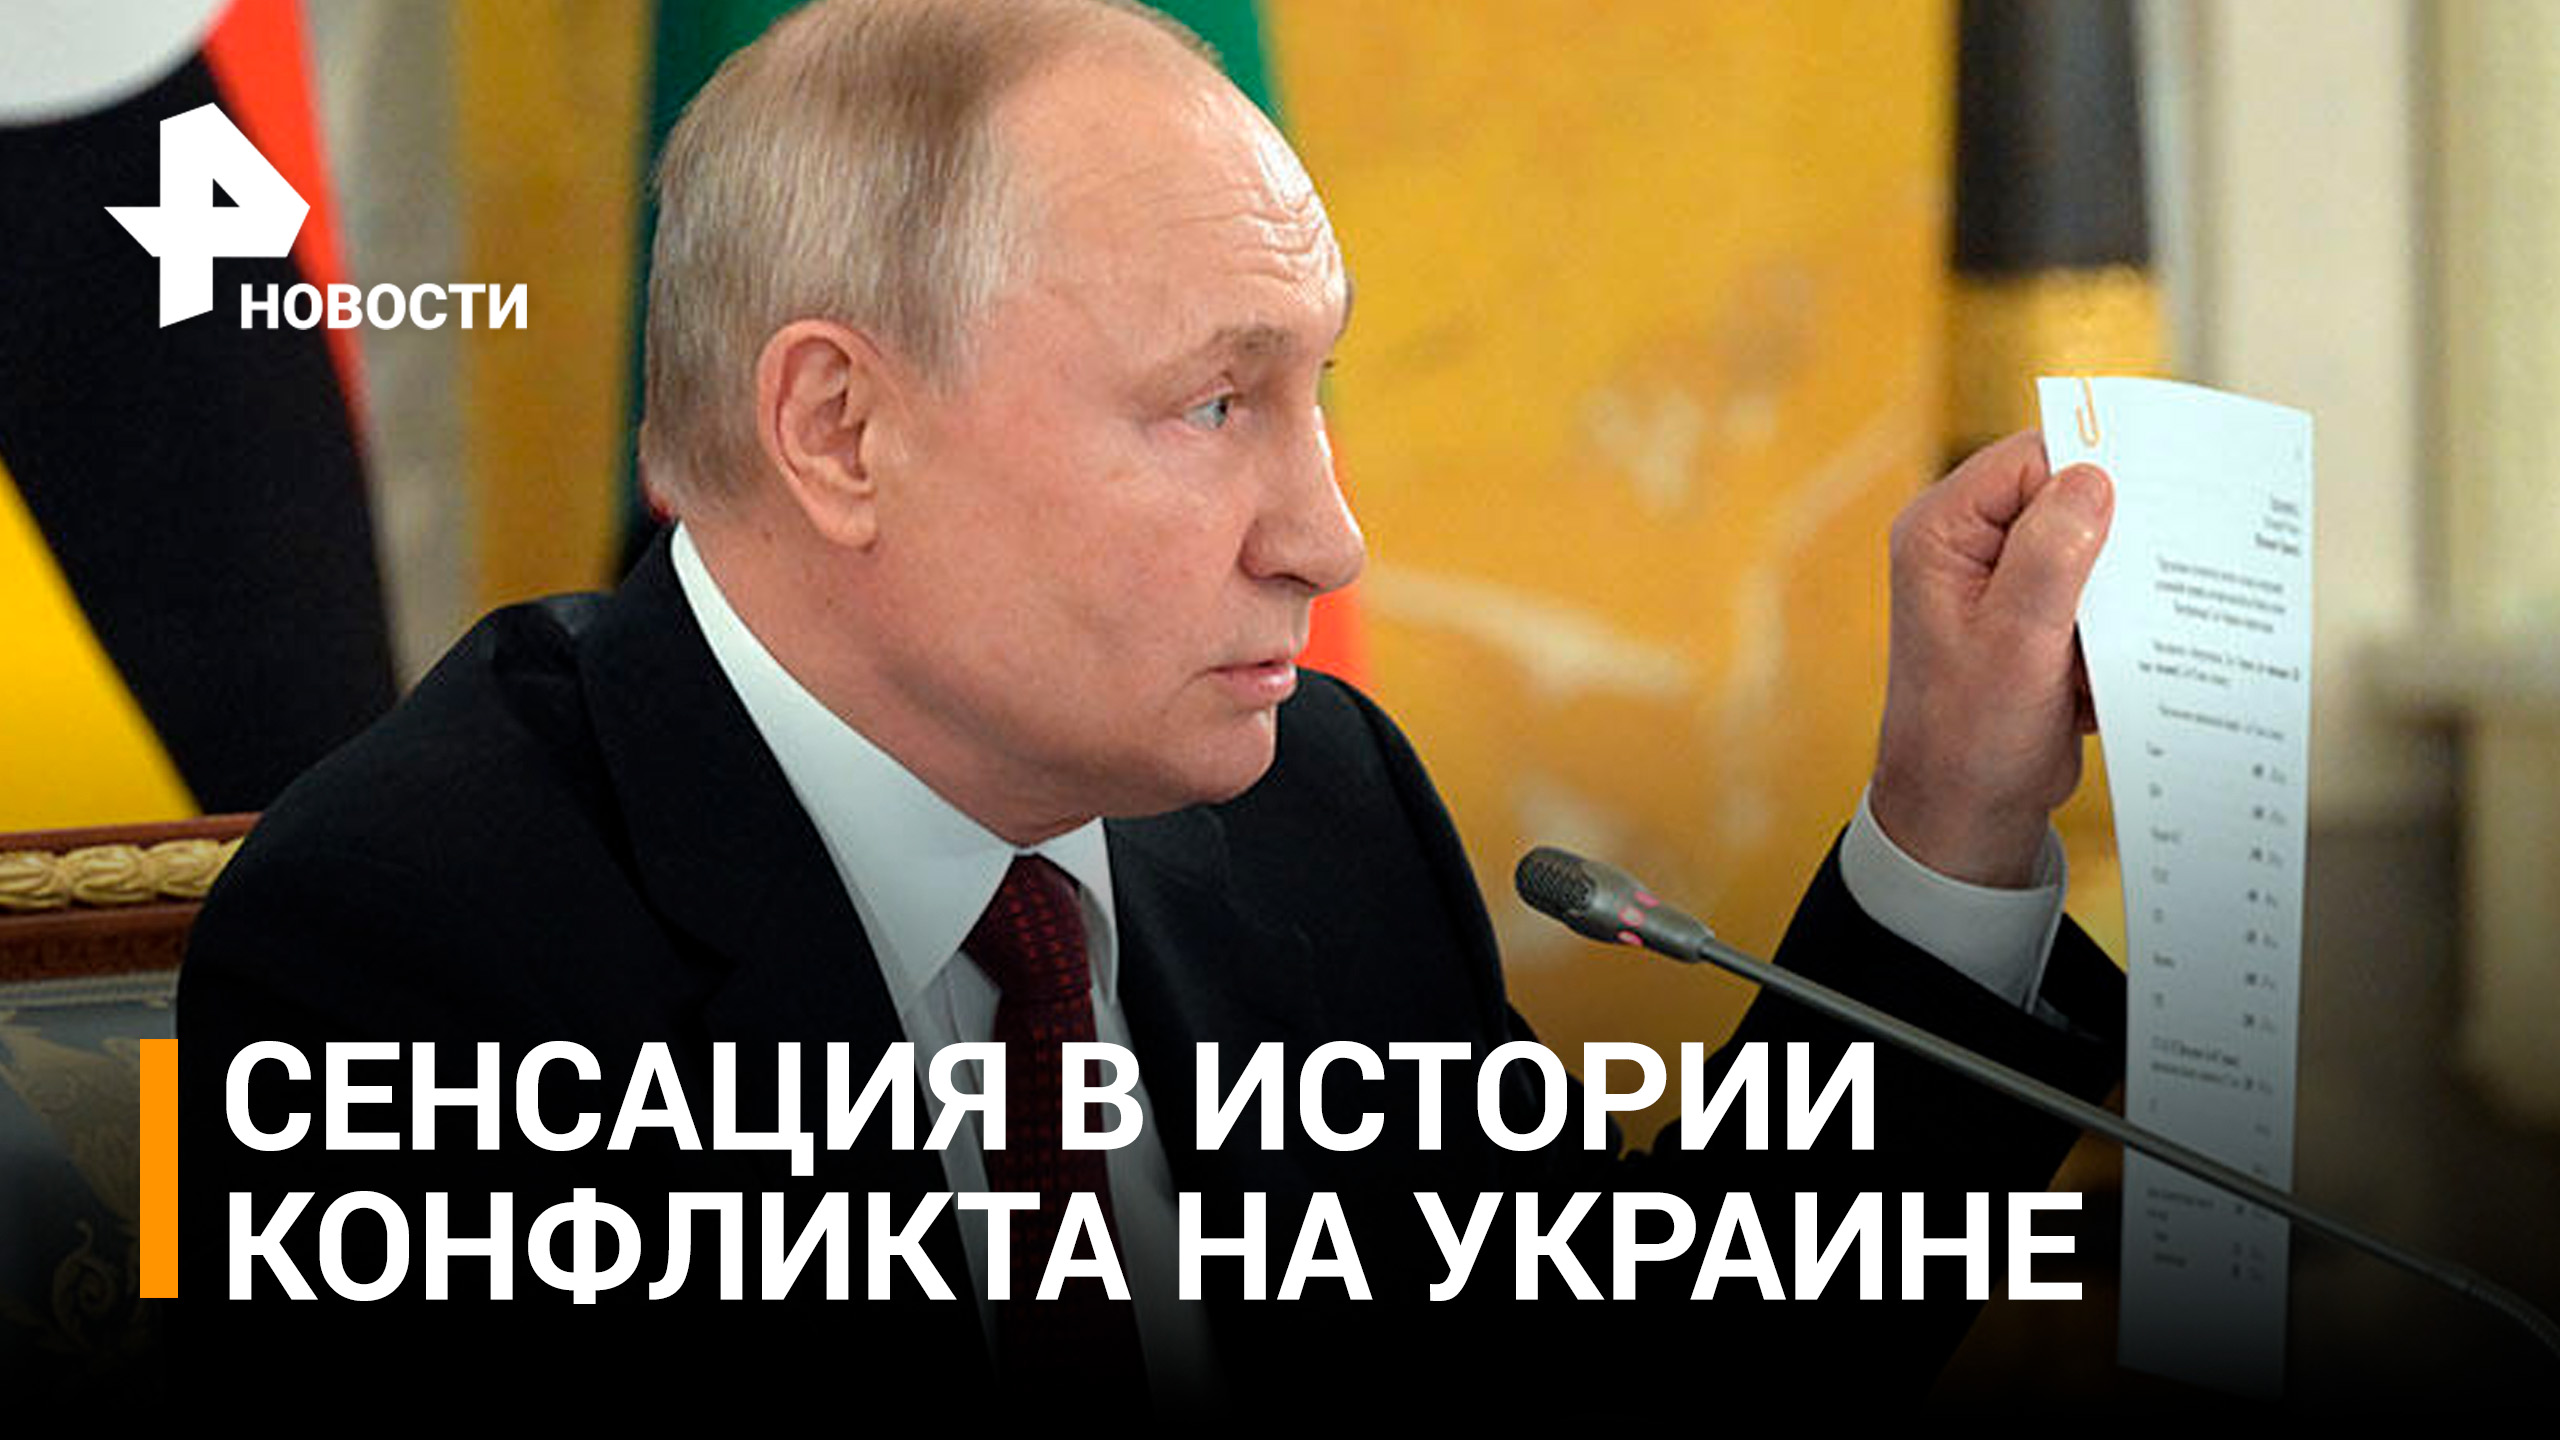 "Привыкли врать": Путин вскрыл лживую сущность Запада и Киева / РЕН Новости